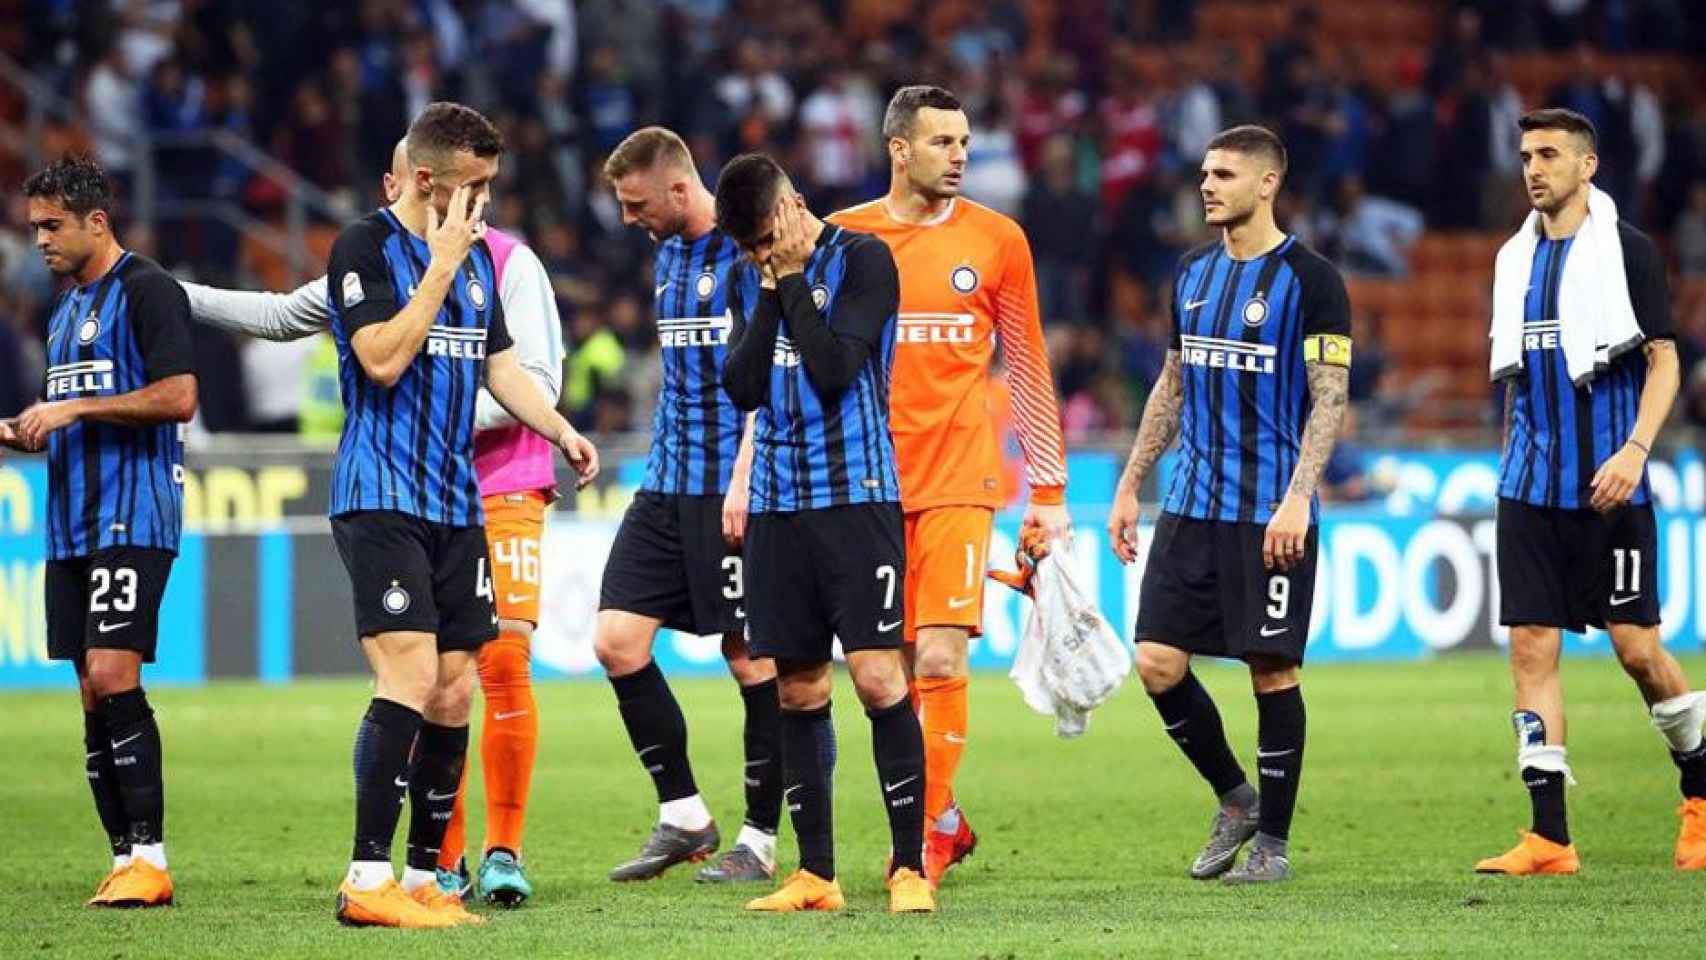 Los jugadores del Inter de Milán cabizbajos tras una derrota / EFE